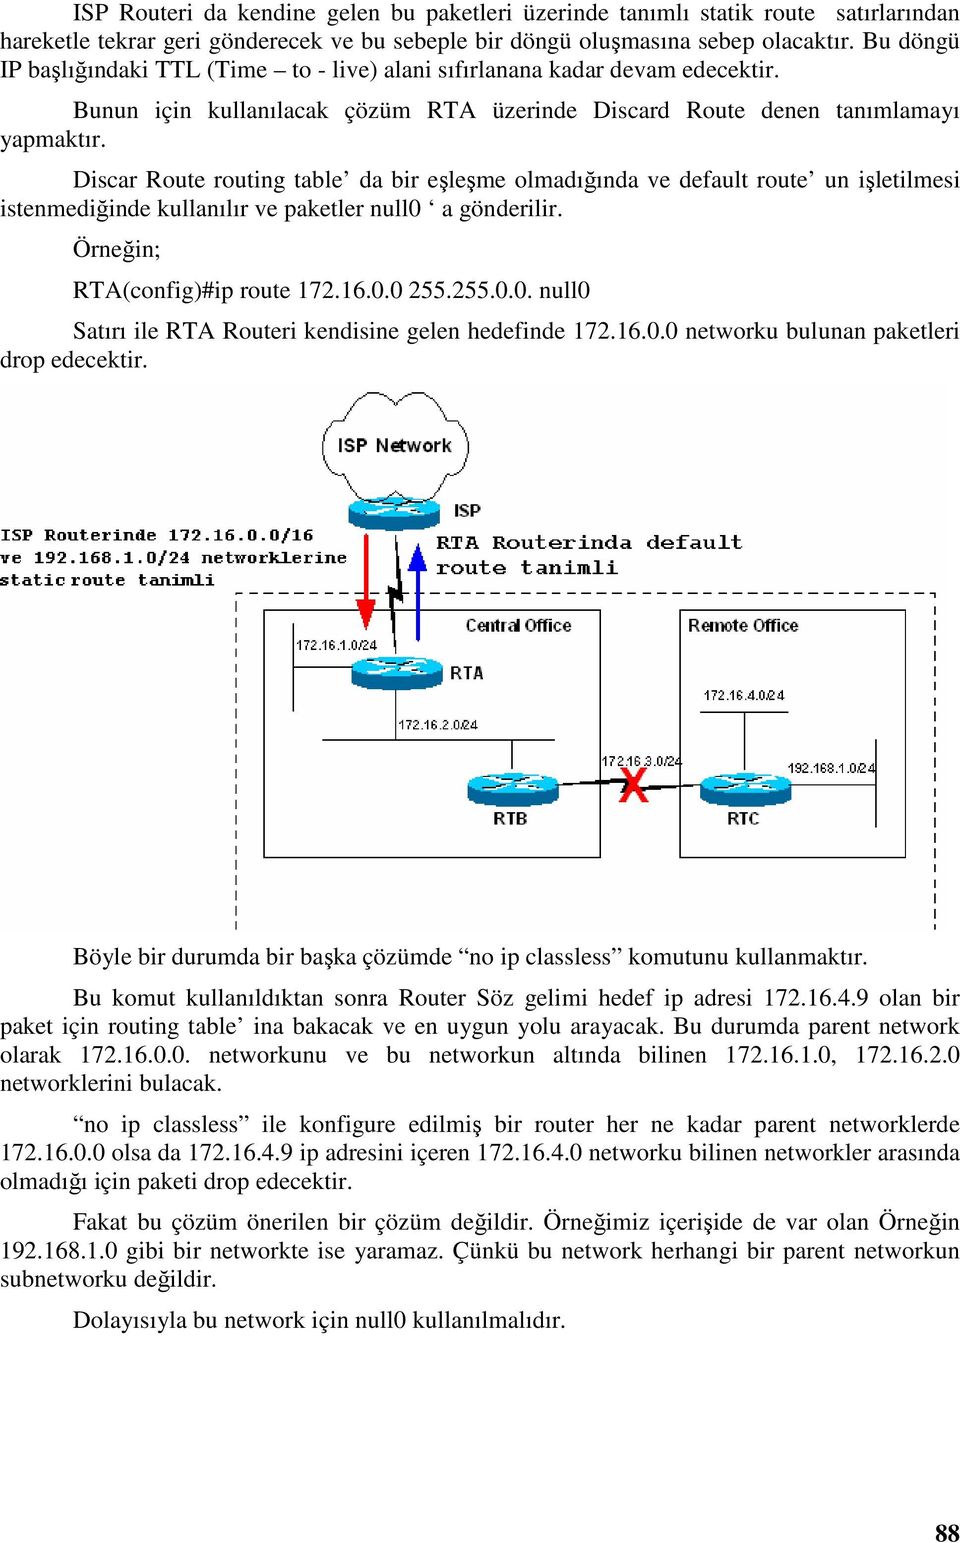 Discar Route routing table da bir eşleşme olmadığında ve default route un işletilmesi istenmediğinde kullanılır ve paketler null0 a gönderilir. Örneğin; RTA(config)#ip route 172.16.0.0 255.255.0.0. null0 Satırı ile RTA Routeri kendisine gelen hedefinde 172.